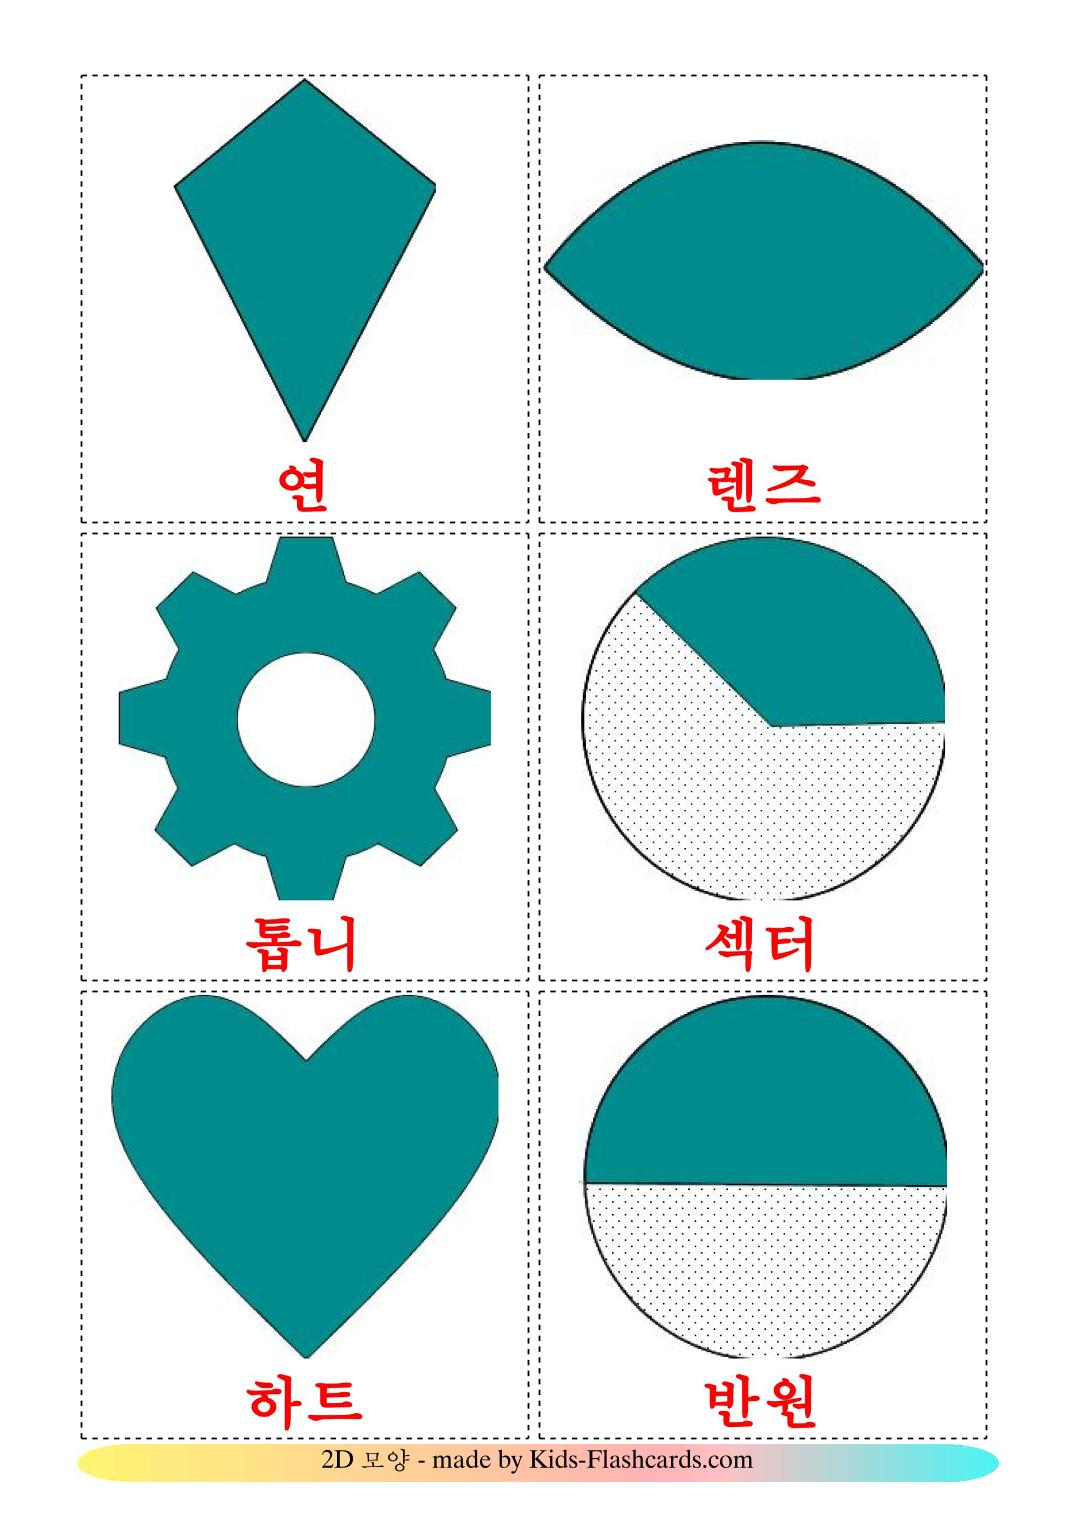 Формы 2D - 35 Карточек Домана на корейском